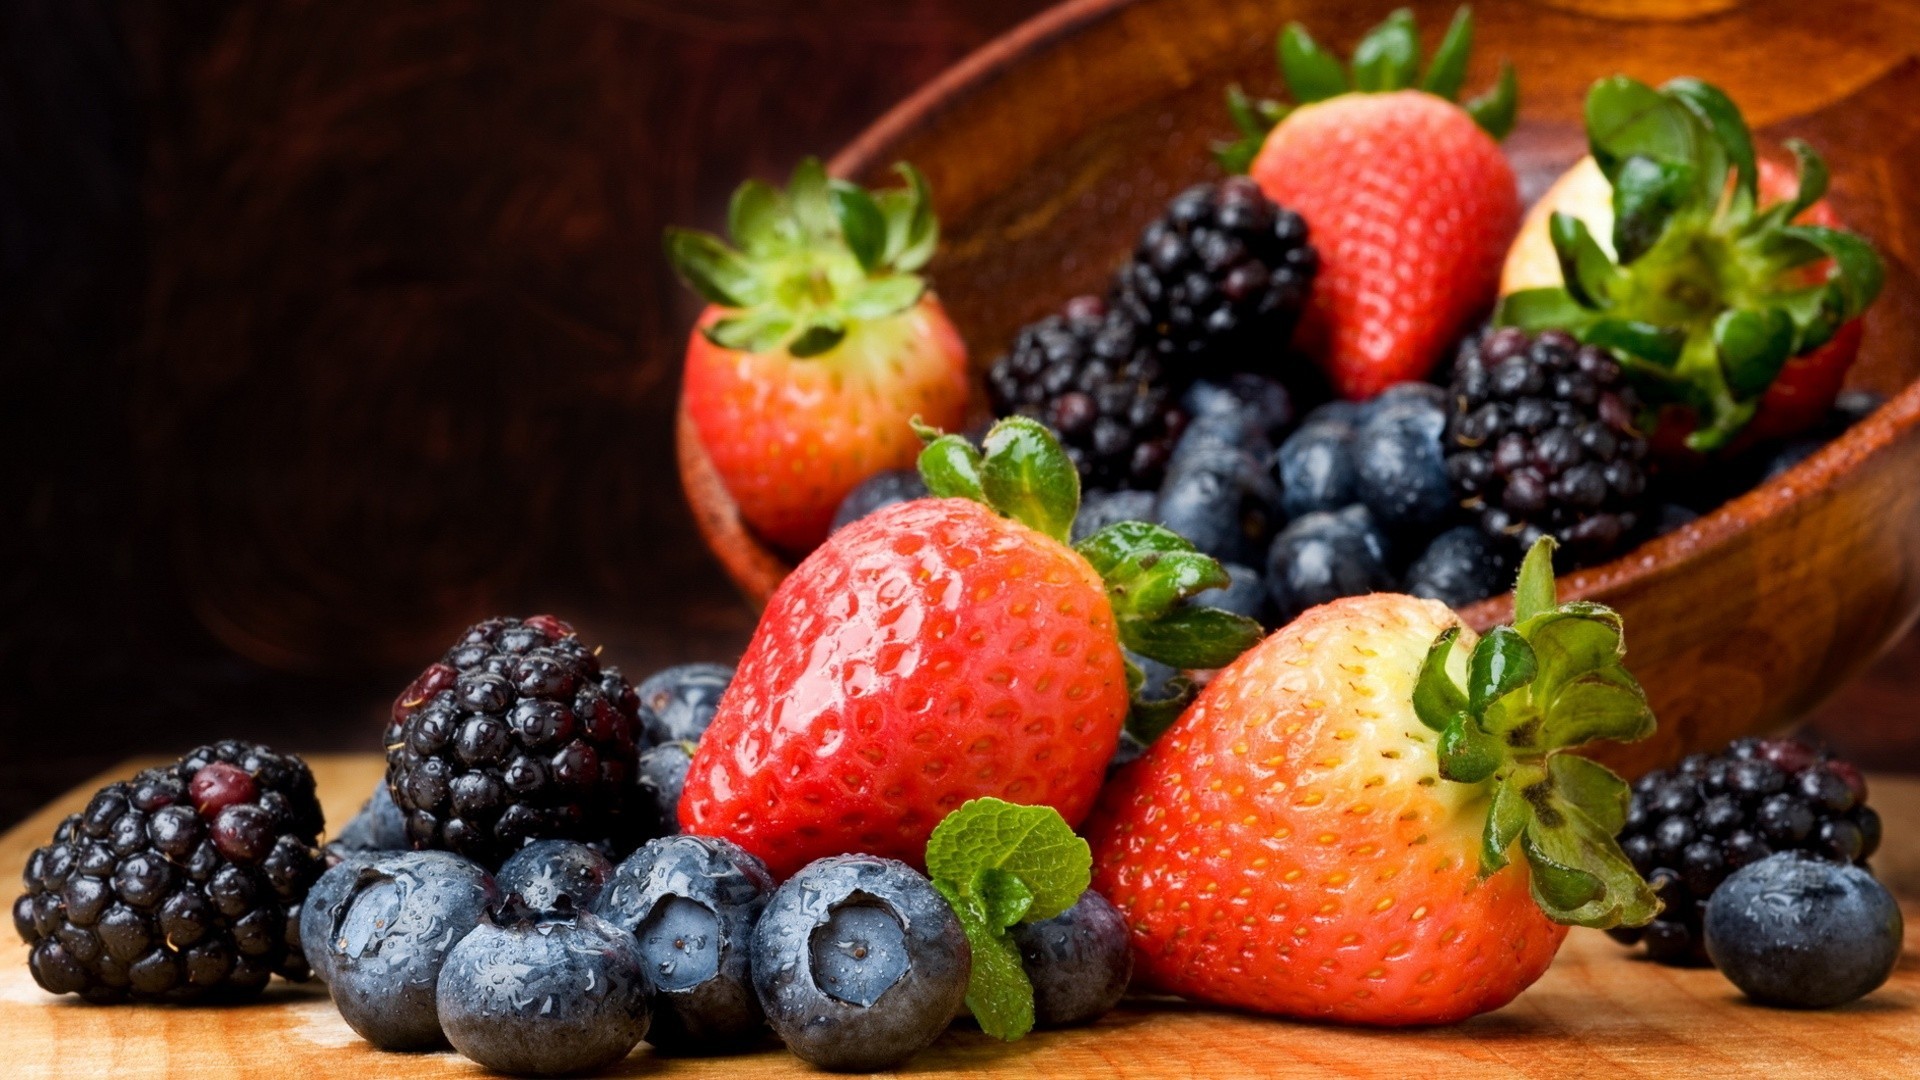 General 1920x1080 fruit strawberries blackberries bowls blueberries food colorful berries